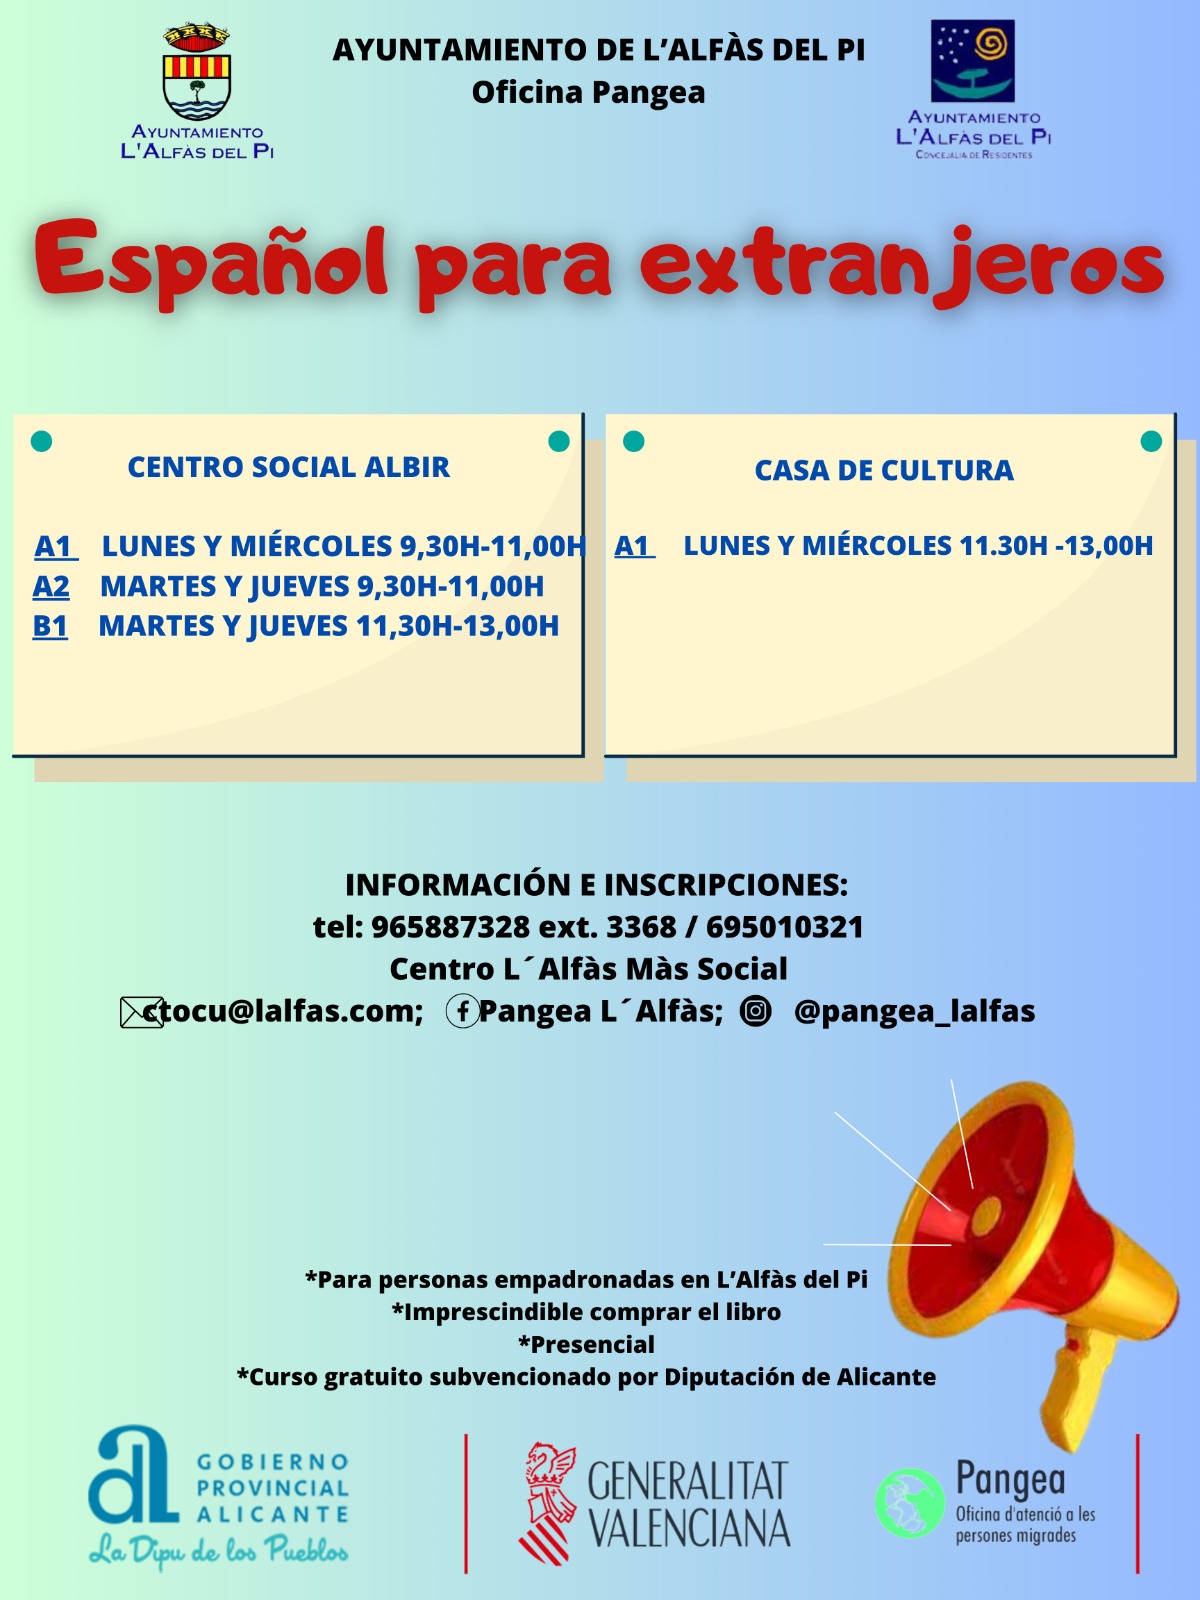 La oficina Pangea de l’Alfàs ofrece 5 cursos gratuitos de Español y 1 de zumba para residentes internacionales